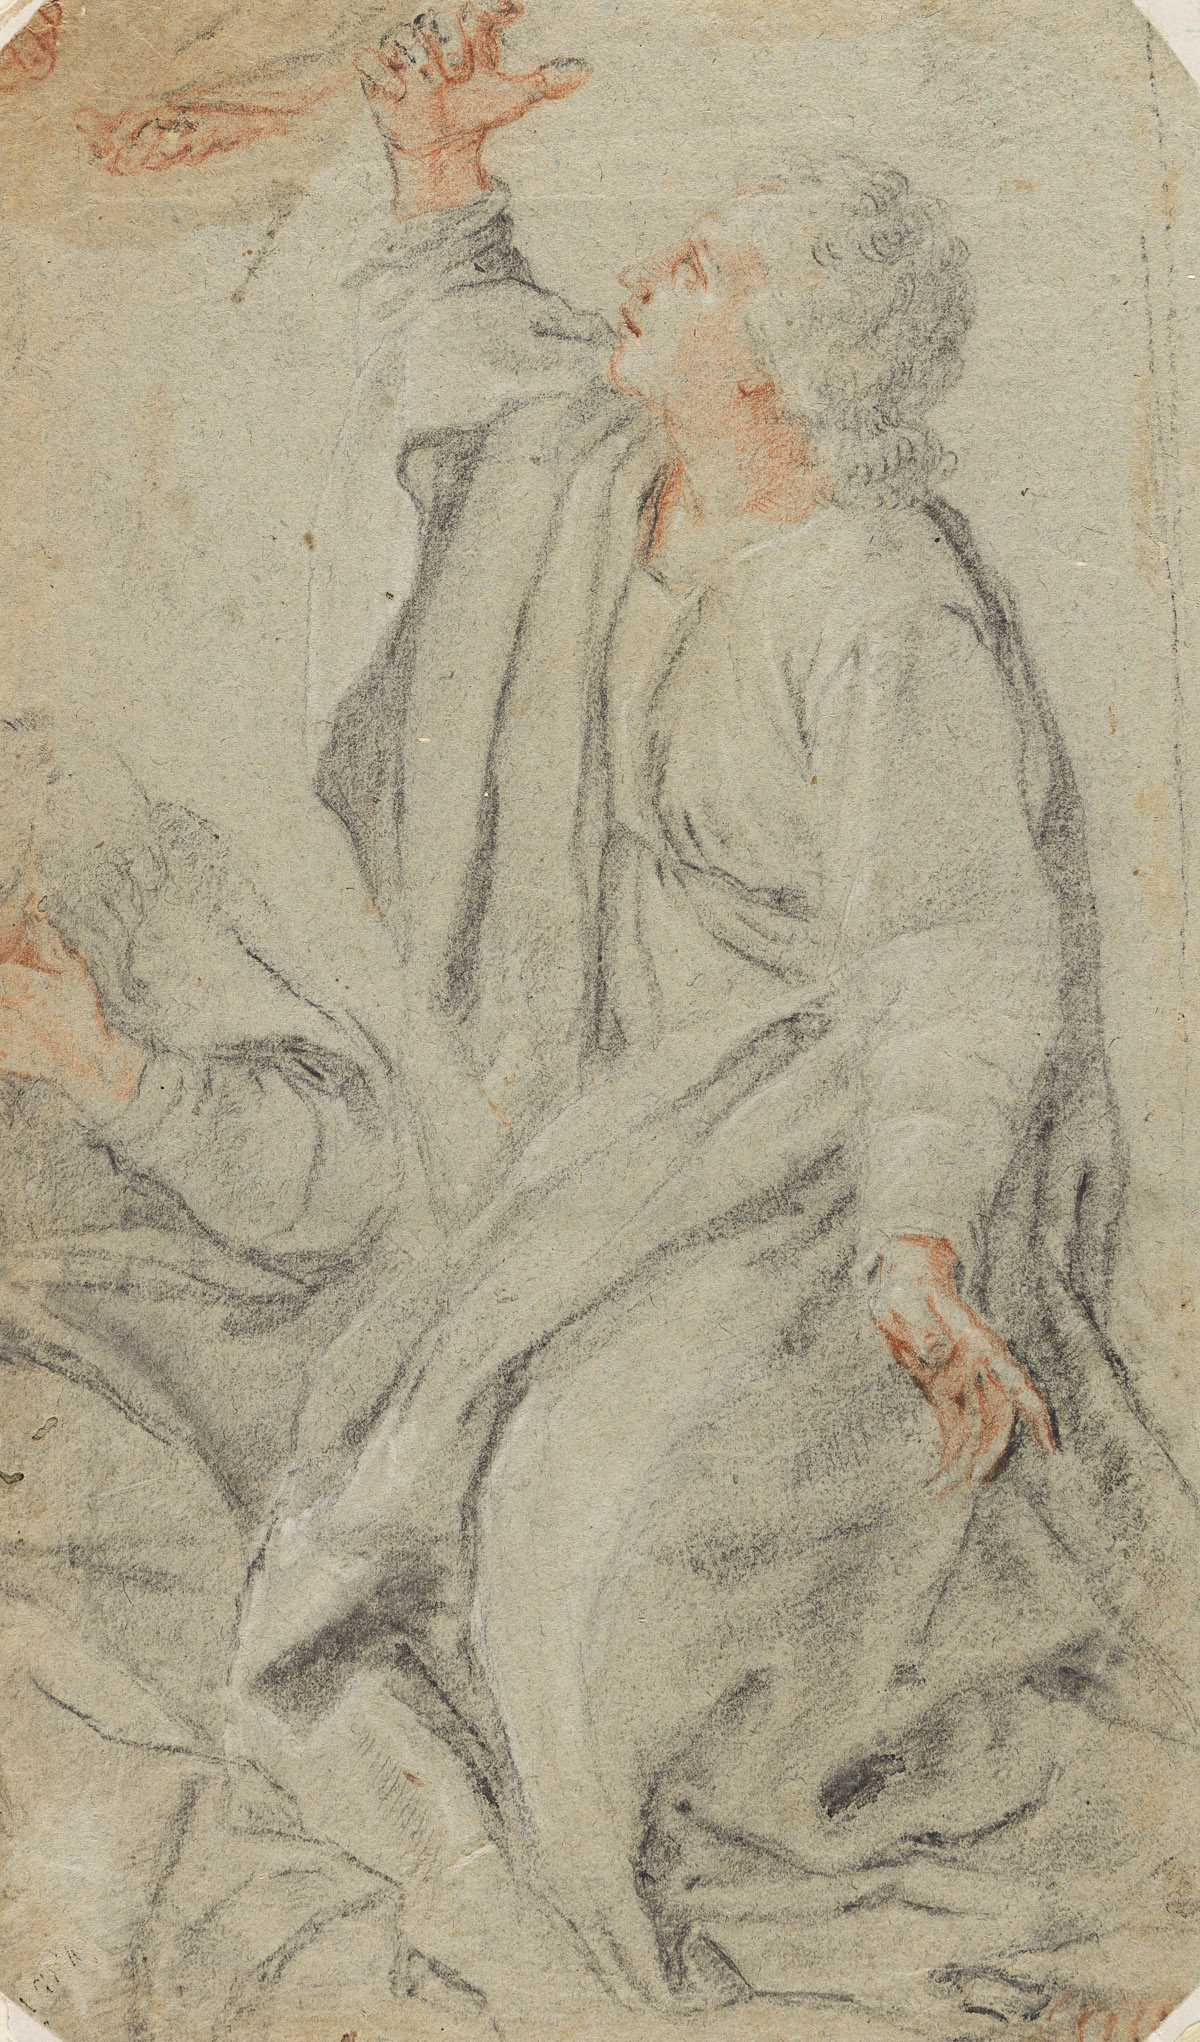 FRANCESCO VANNI (Siena 1563-1610 Siena) Study of a Kneeling Figure.